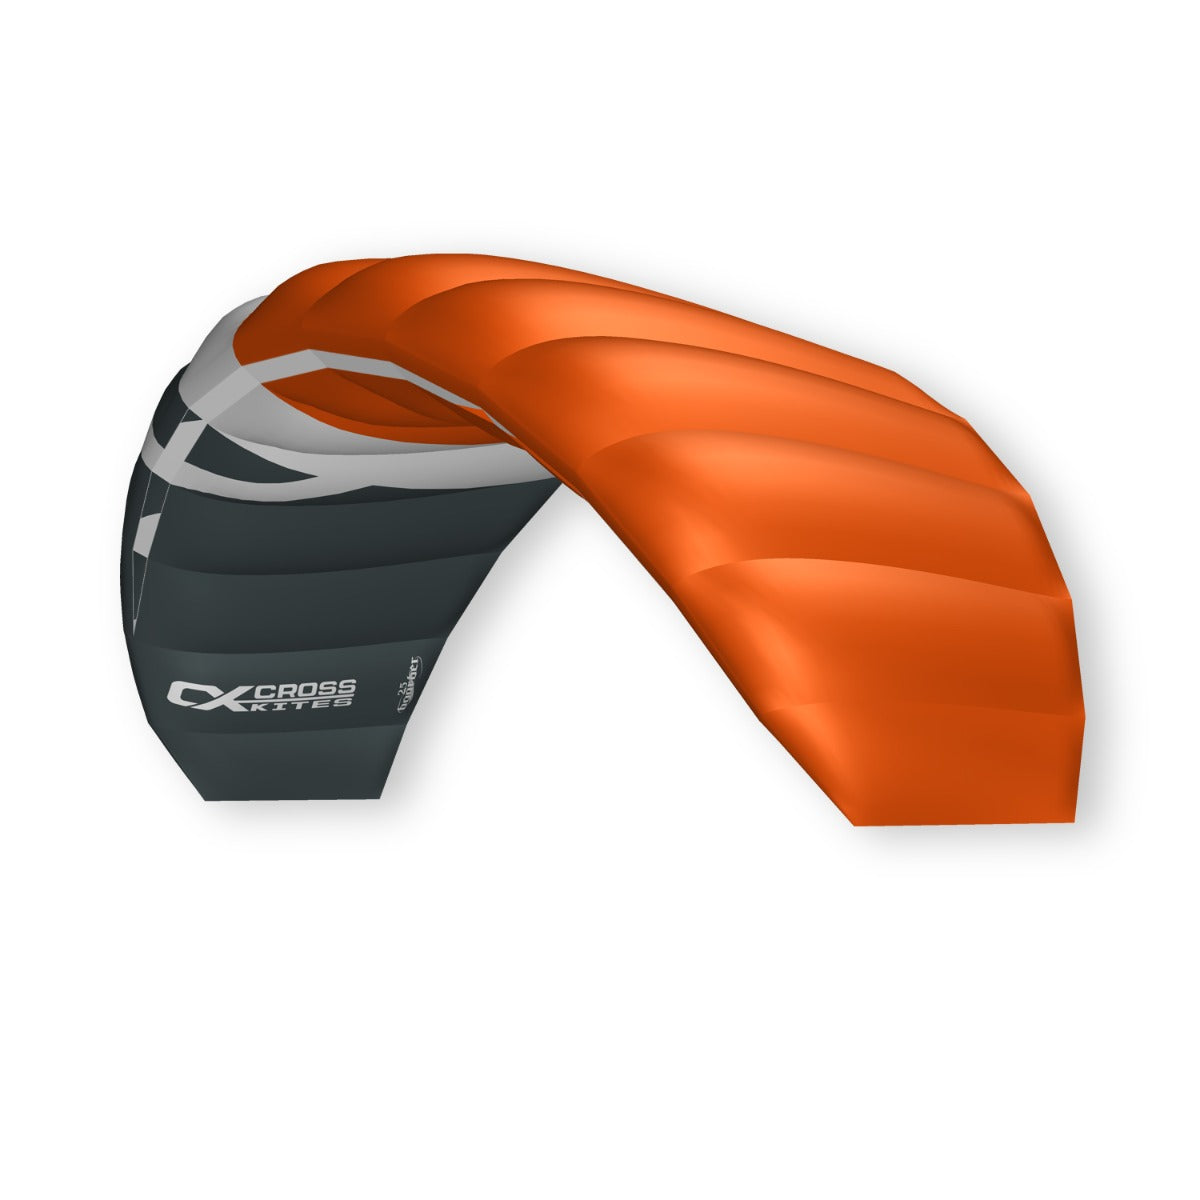 CrossKites Lenkmatte CrossKites Boarder Orange 2.5 R2F Lenkdrachen mit Bar Trainerkite